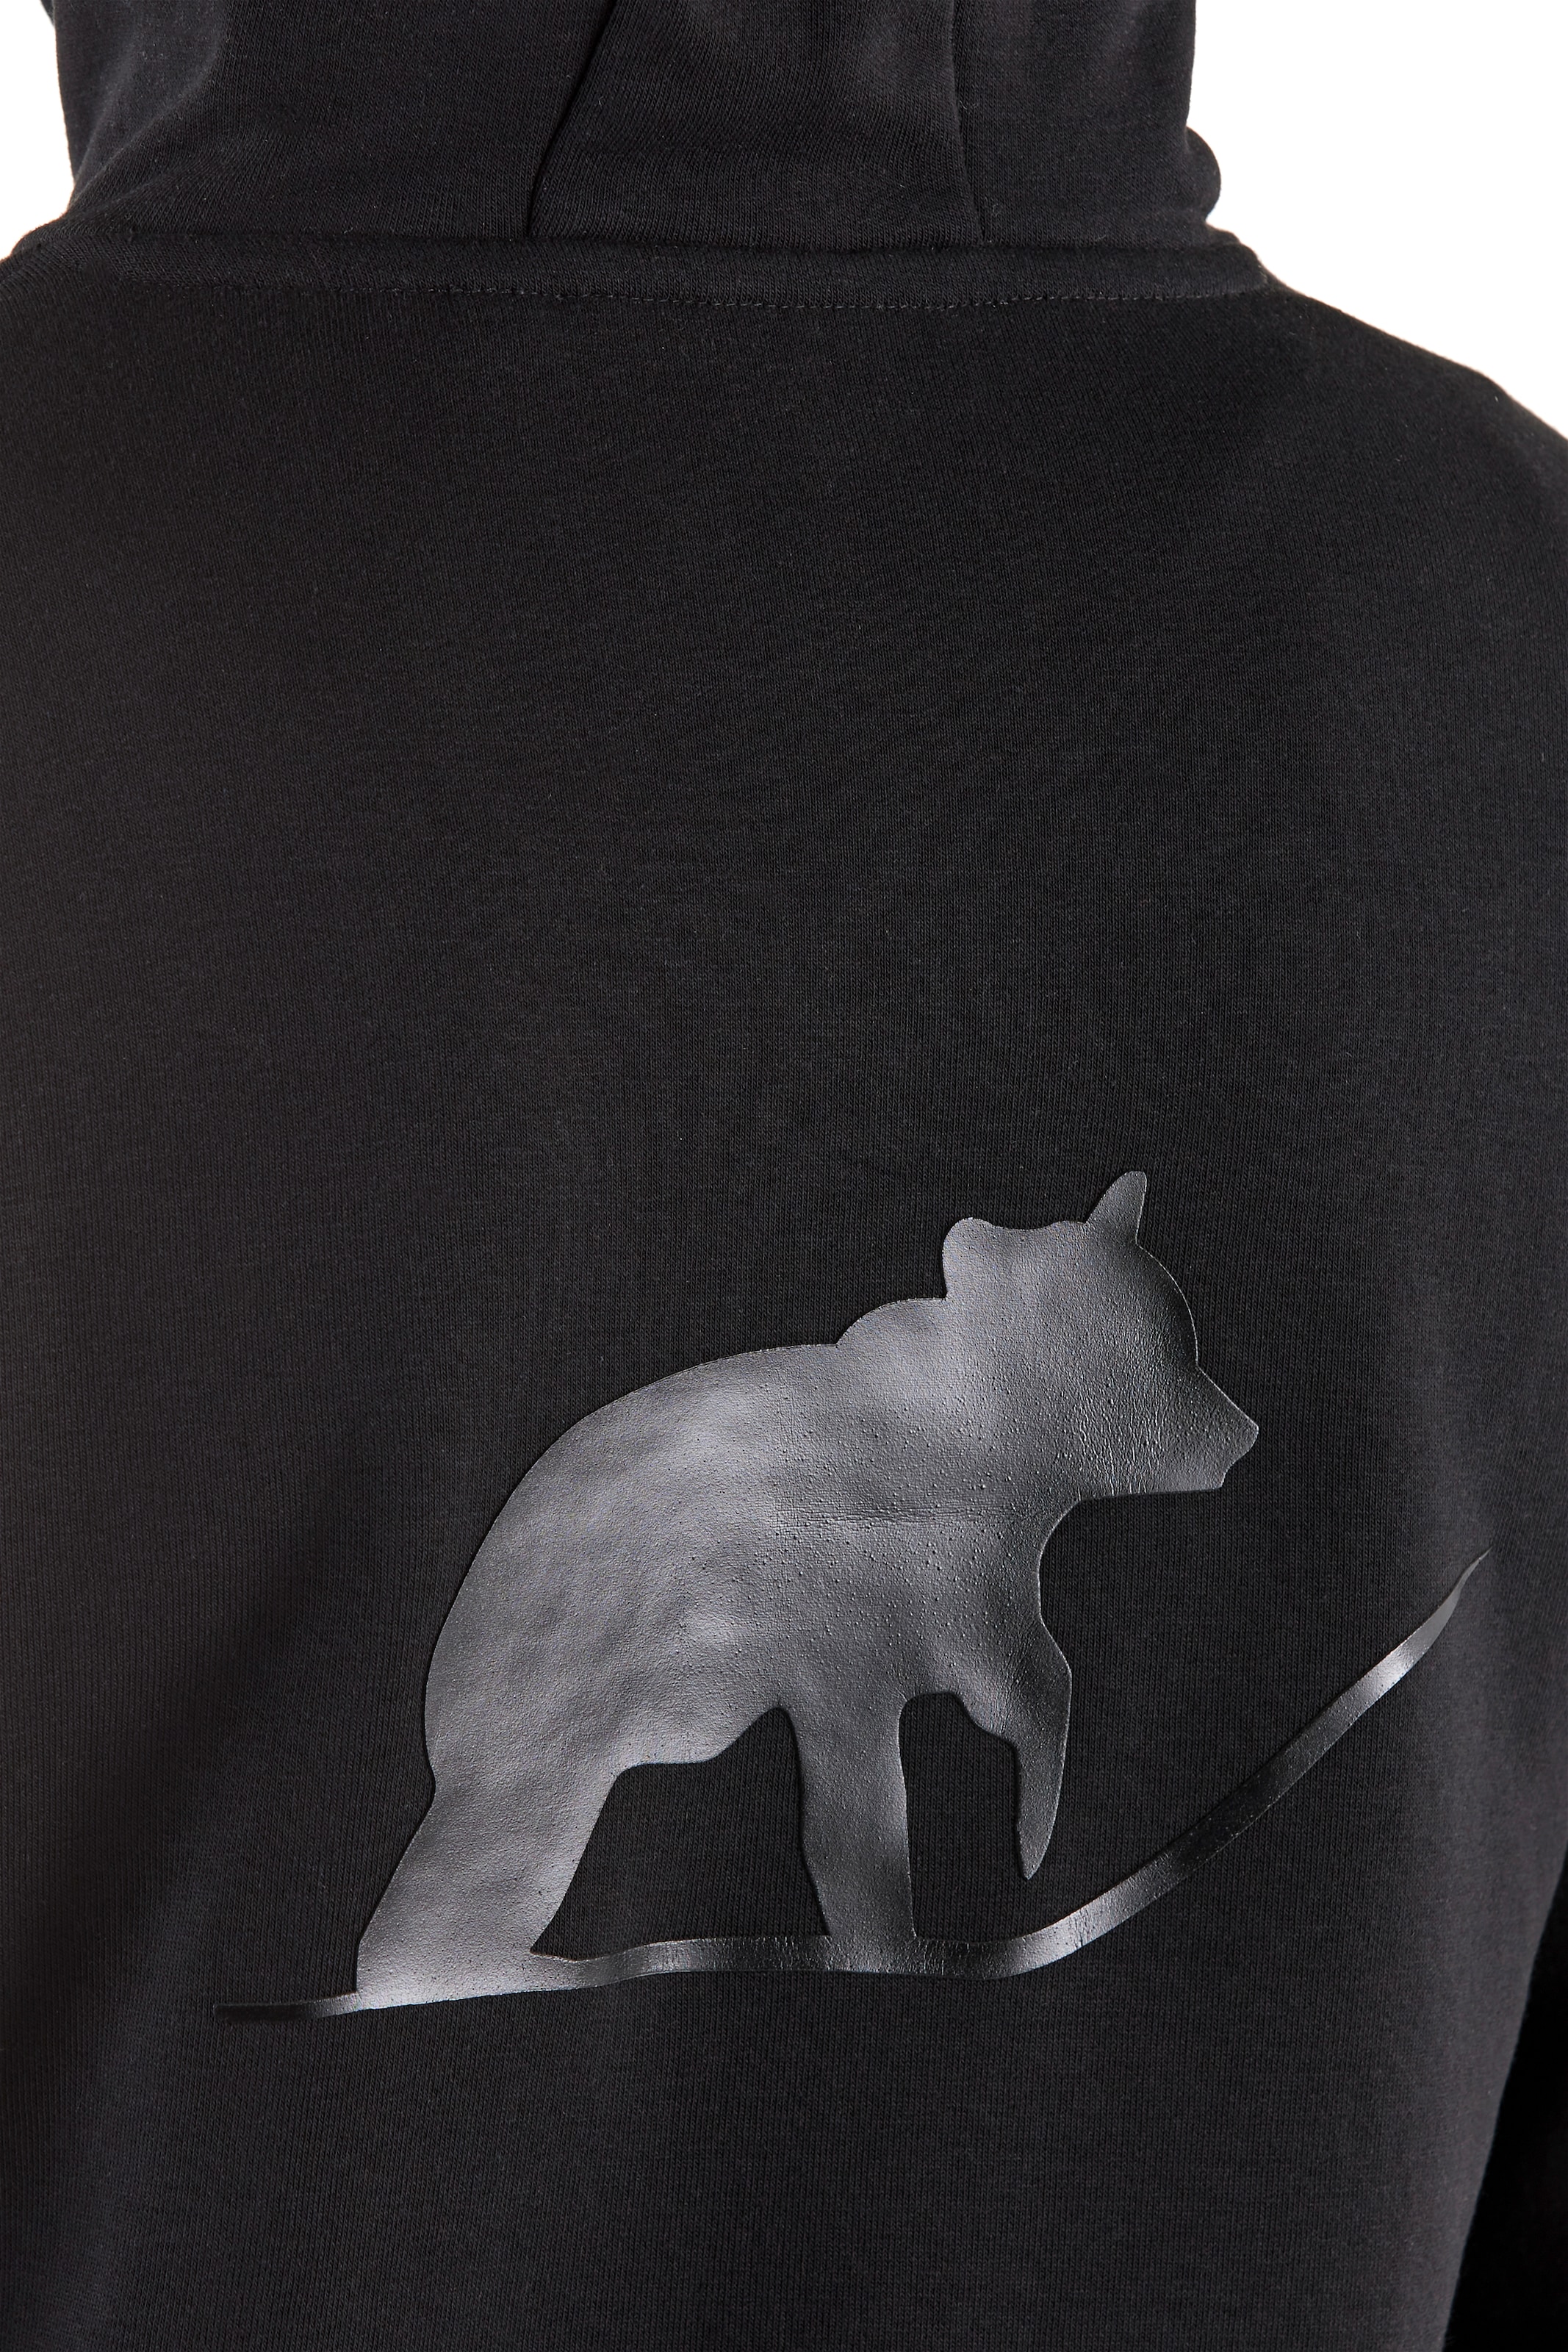 Northern Country Hoodie, perfekt zum Arbeiten, weiches Obermaterial, mit  Kängurutasche online kaufen | Poloshirts